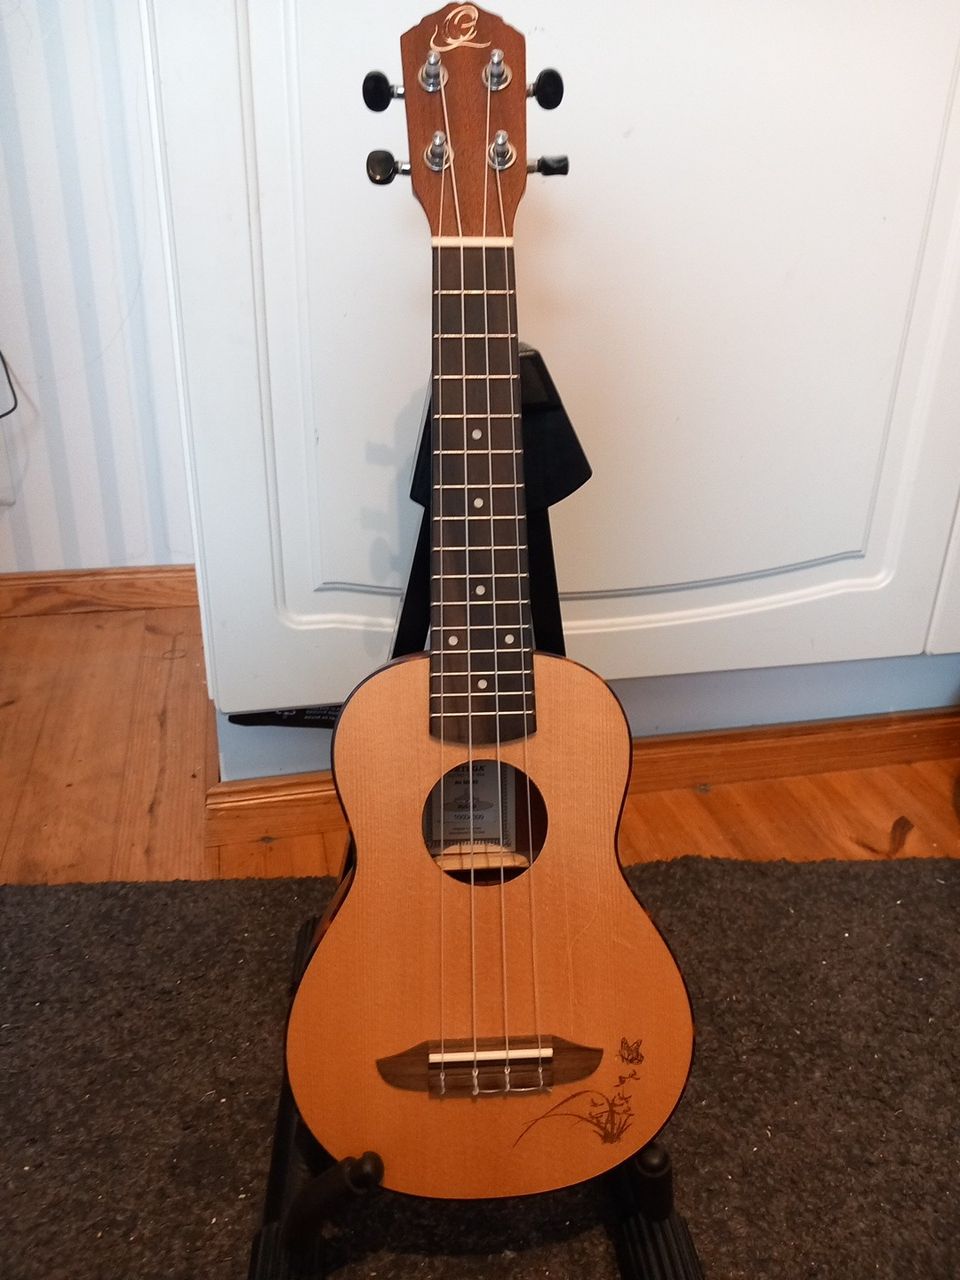 Ortega ru5-so ukulele